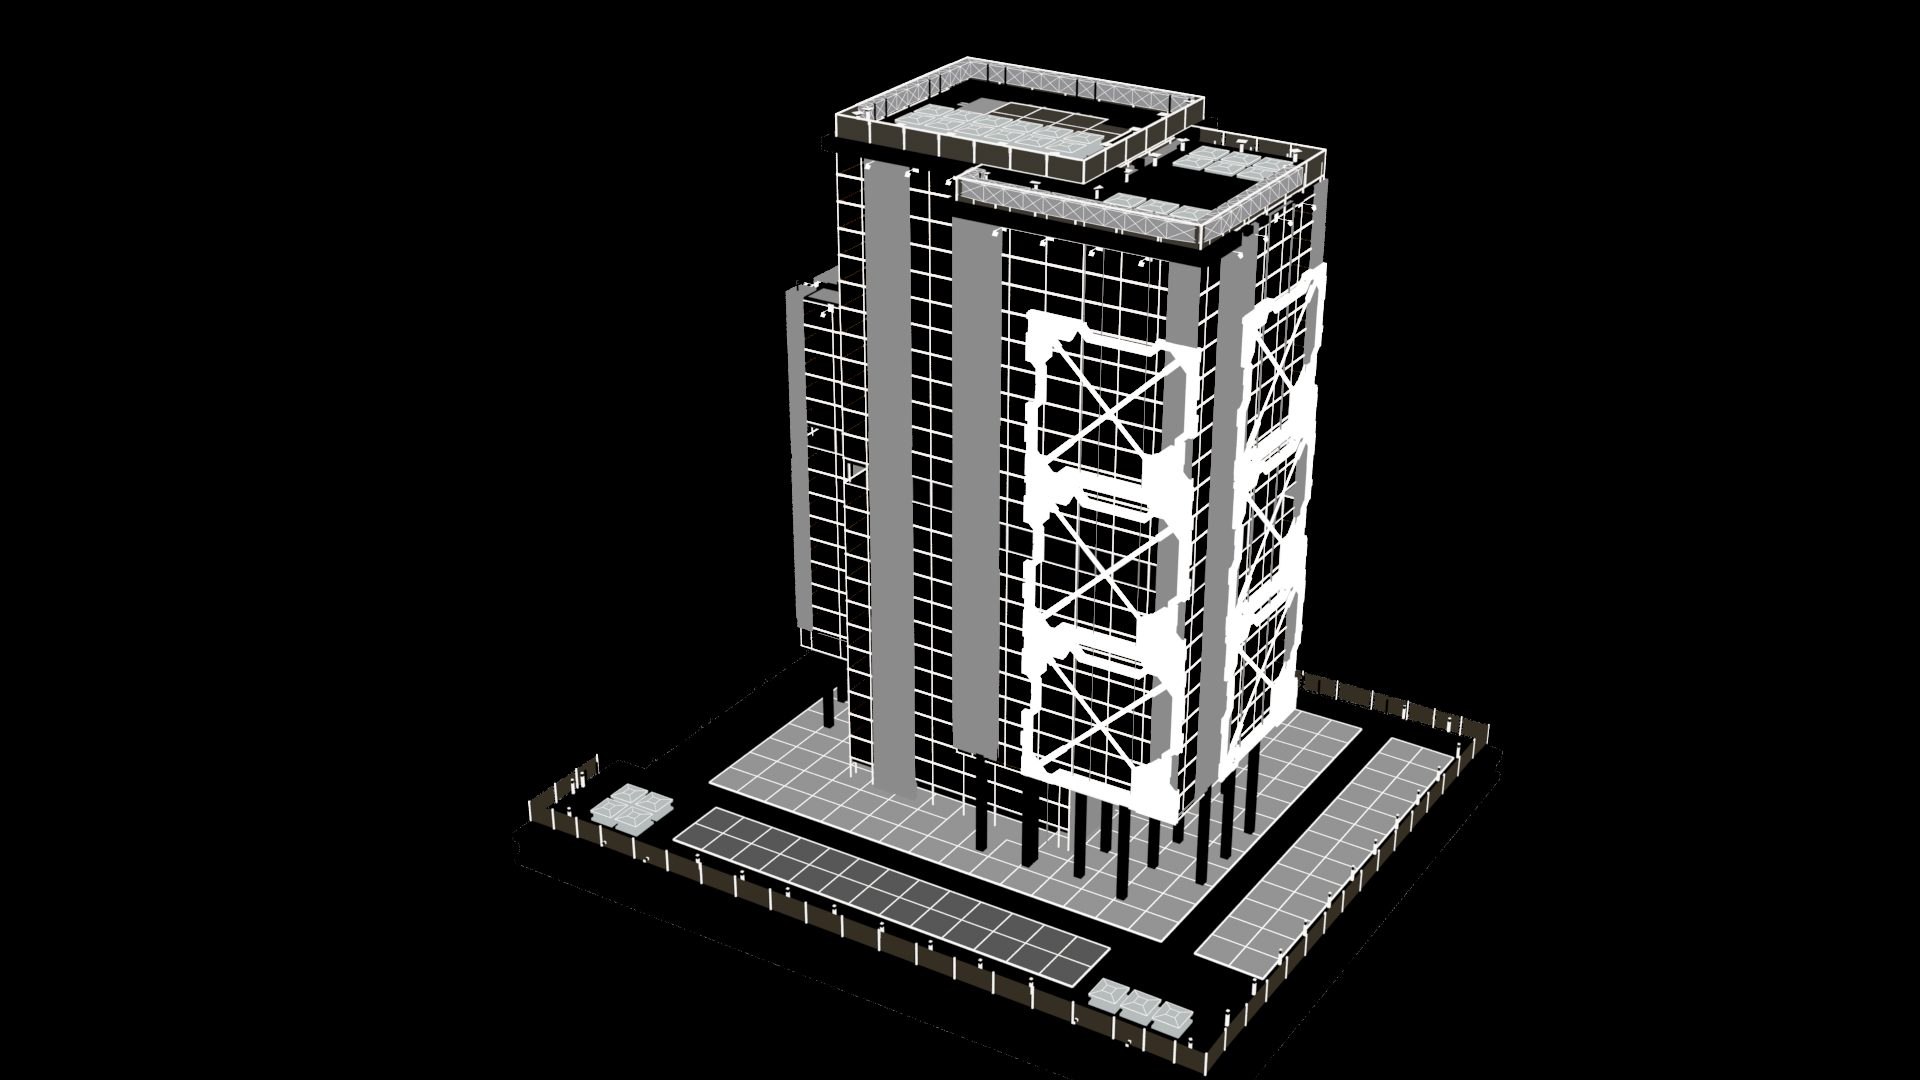 Futuristic Future Modern City Building Skyscraper 008 model ...